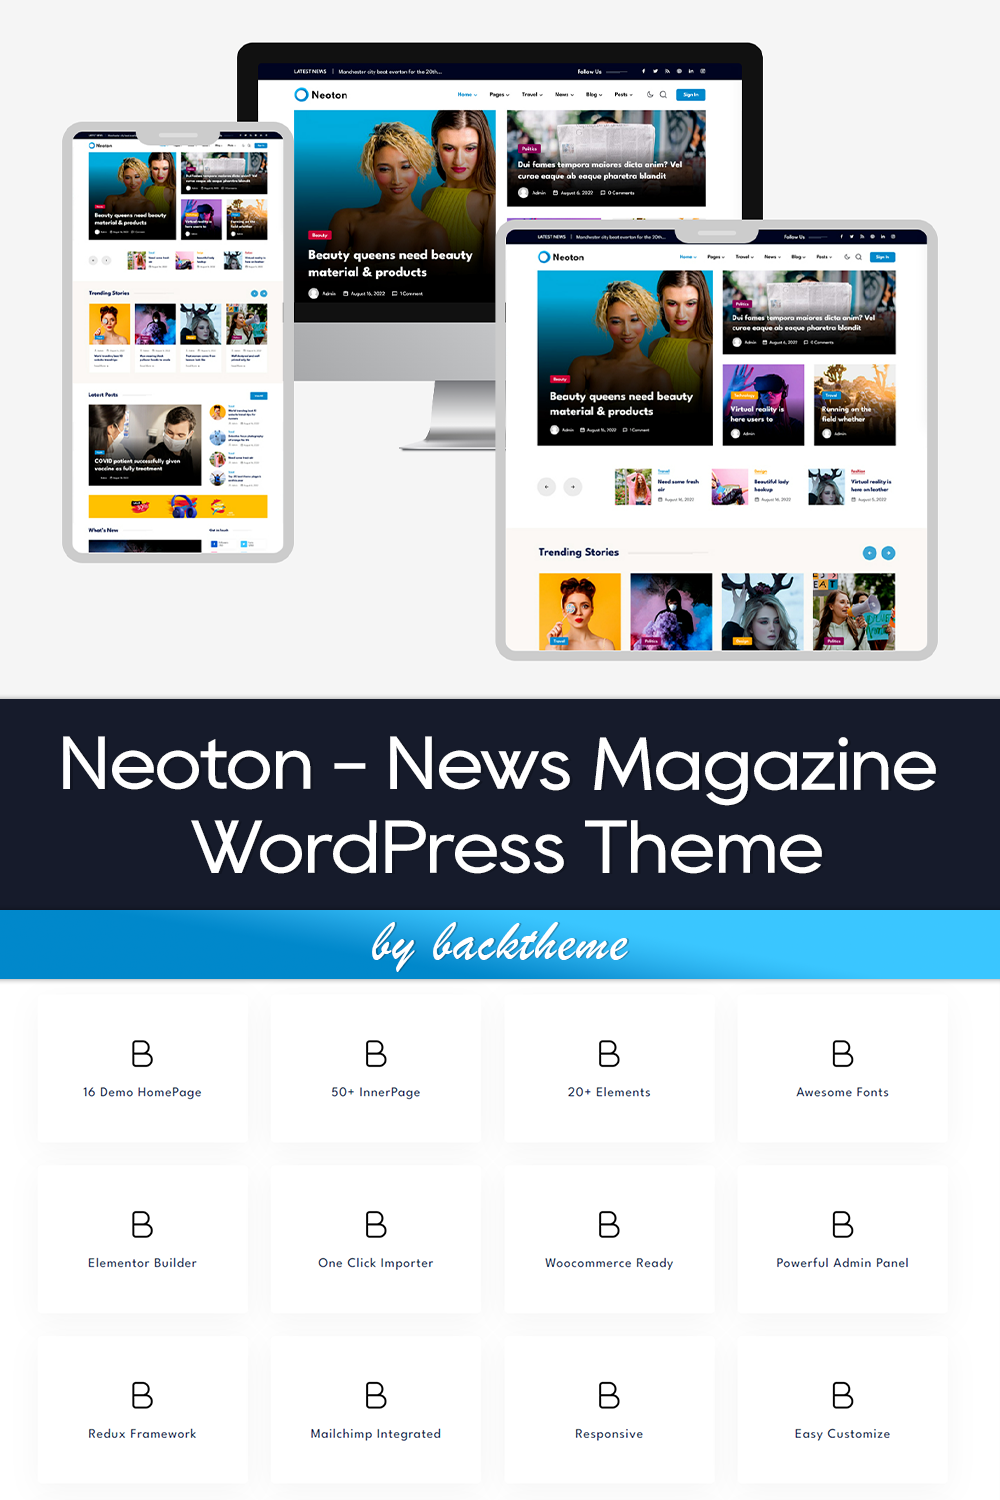 Pinterest of neoton news magazine wordpress theme.